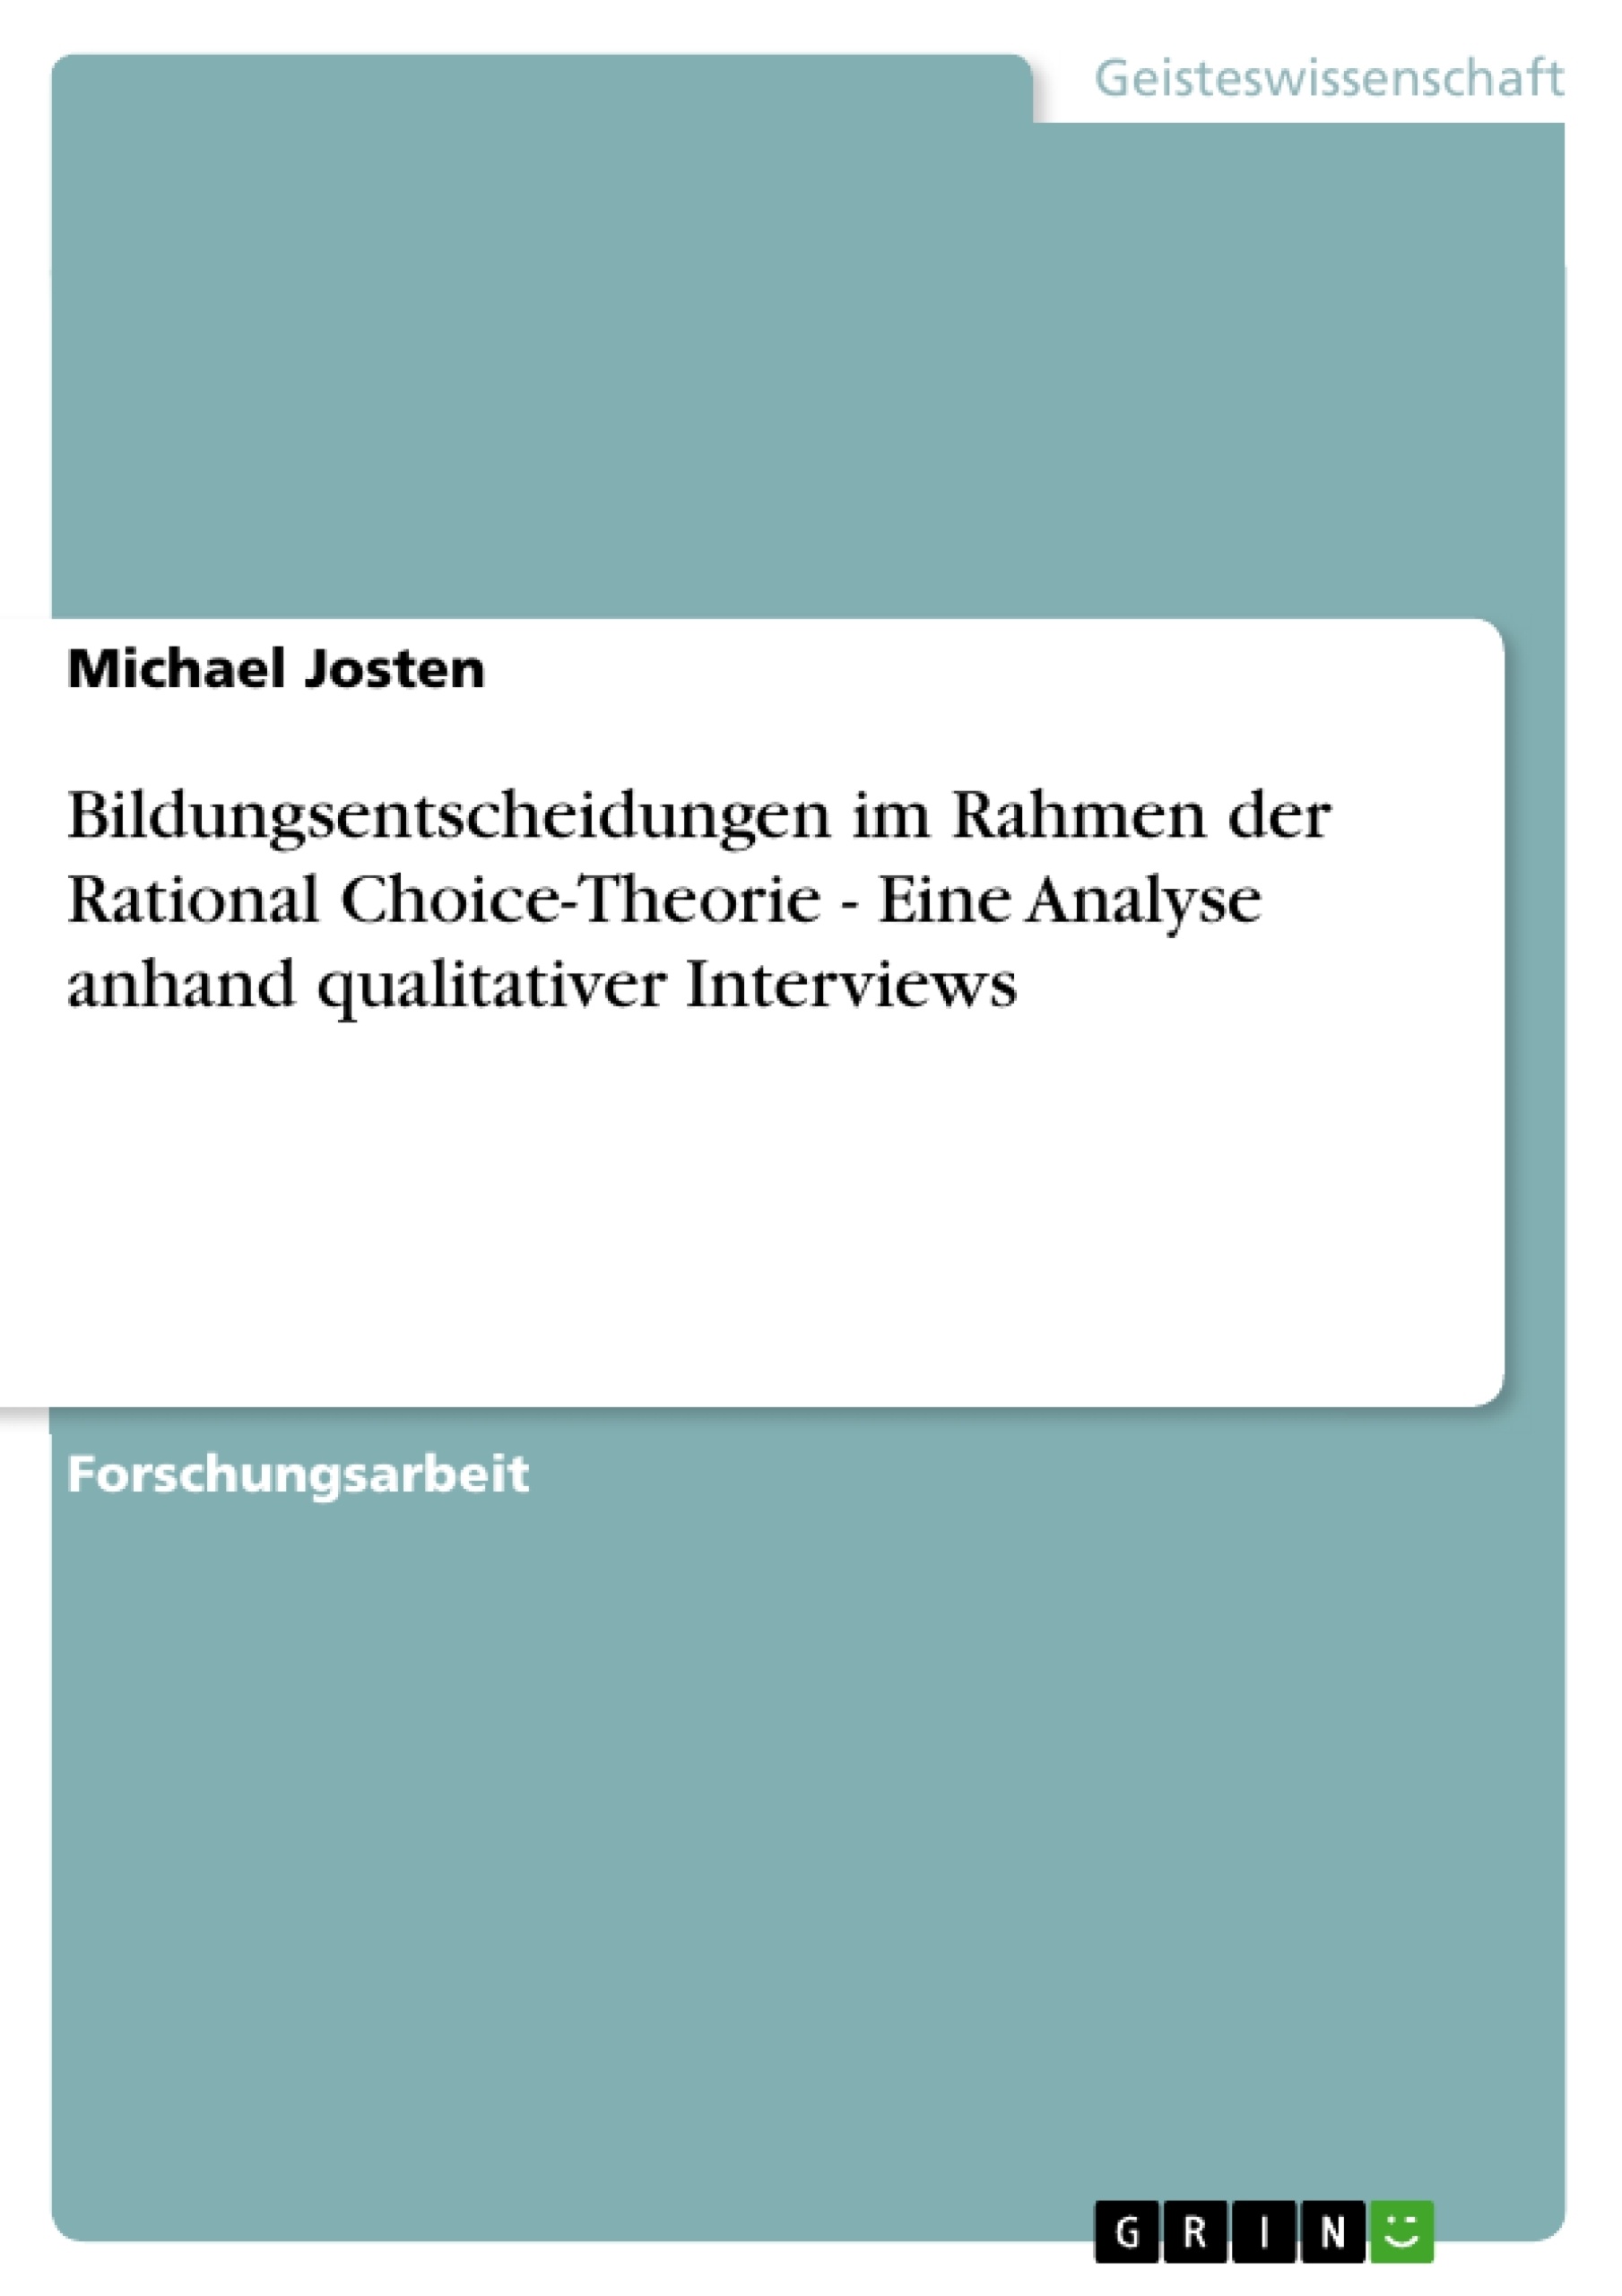 Title: Bildungsentscheidungen im Rahmen der Rational Choice-Theorie - Eine Analyse anhand qualitativer Interviews